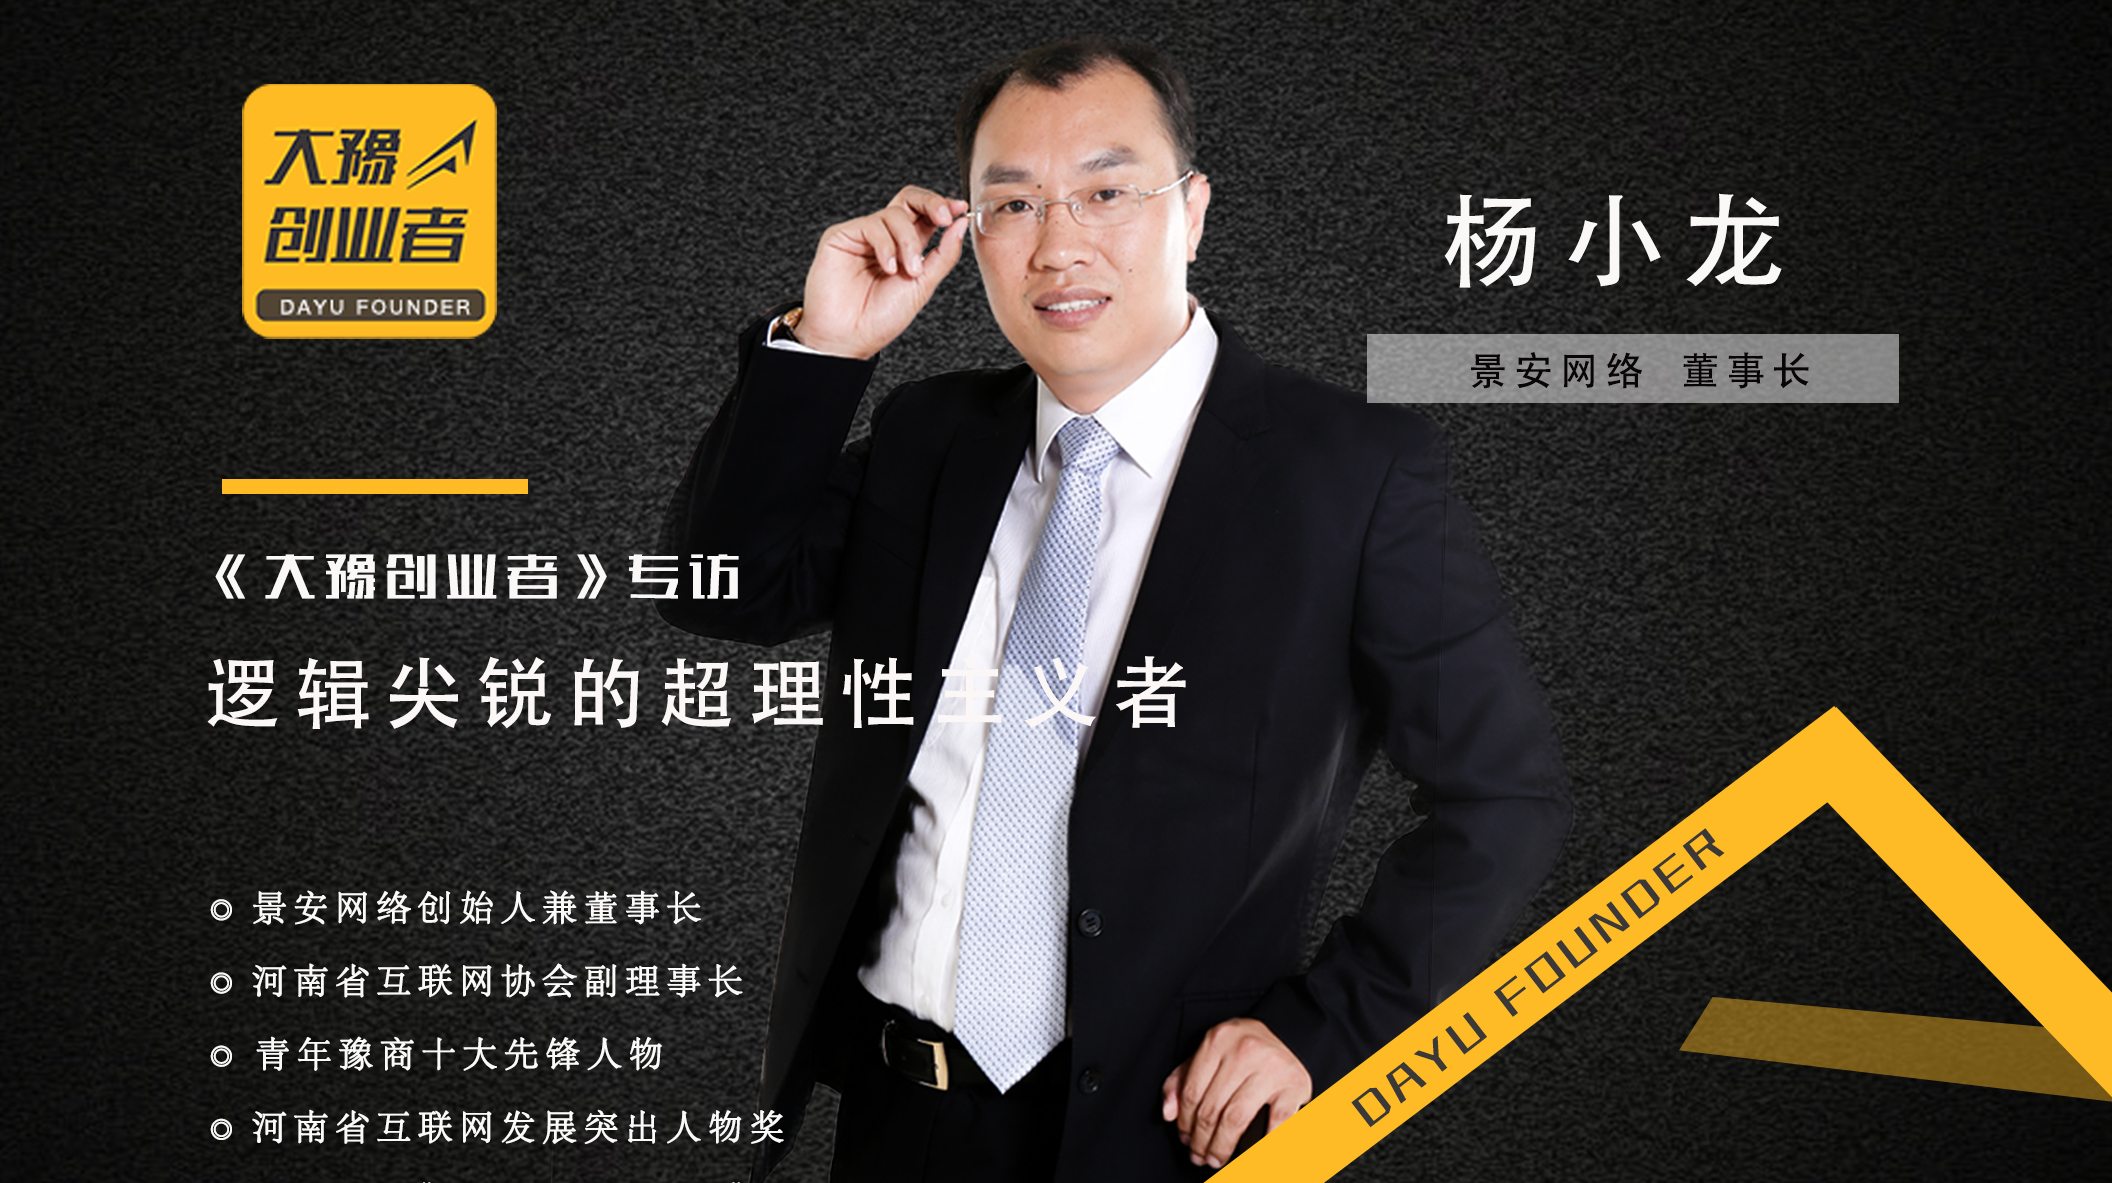 专访景安网络董事长杨小龙:聚焦云时代的进阶之路《大豫创业者》